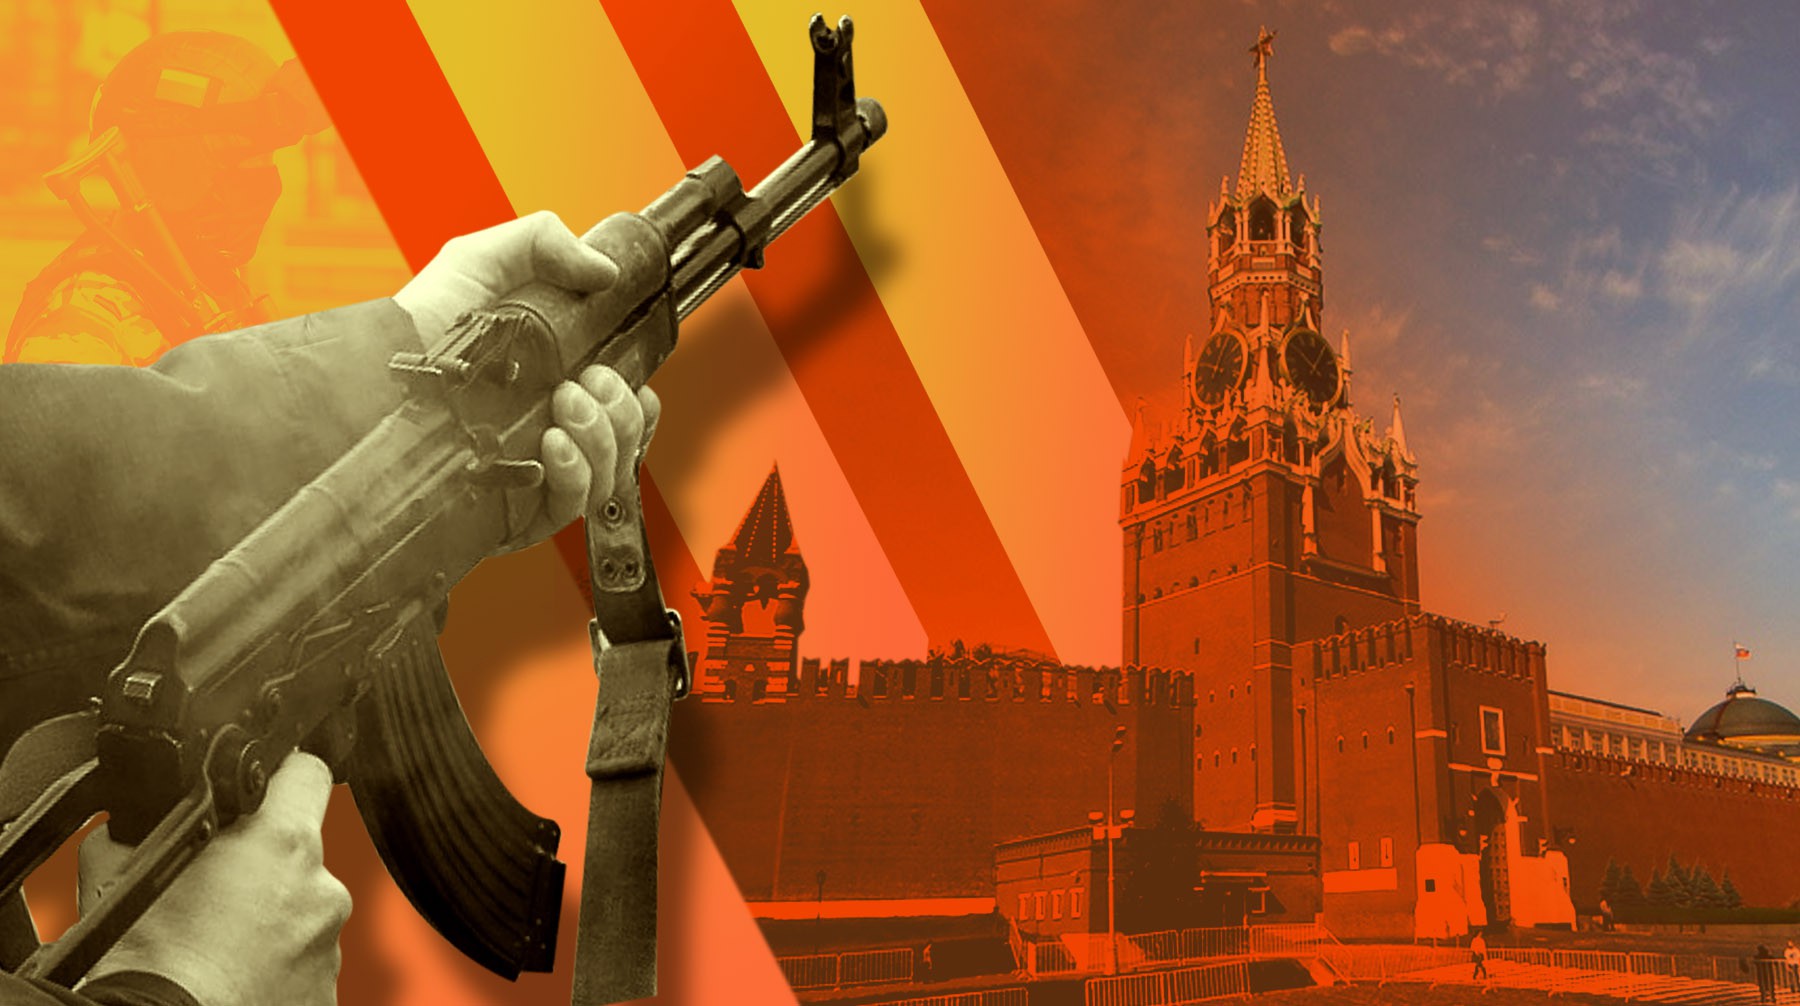 Dailystorm - Семилетний «колумбайн»: как российские власти реагировали на массовые убийства в школах?